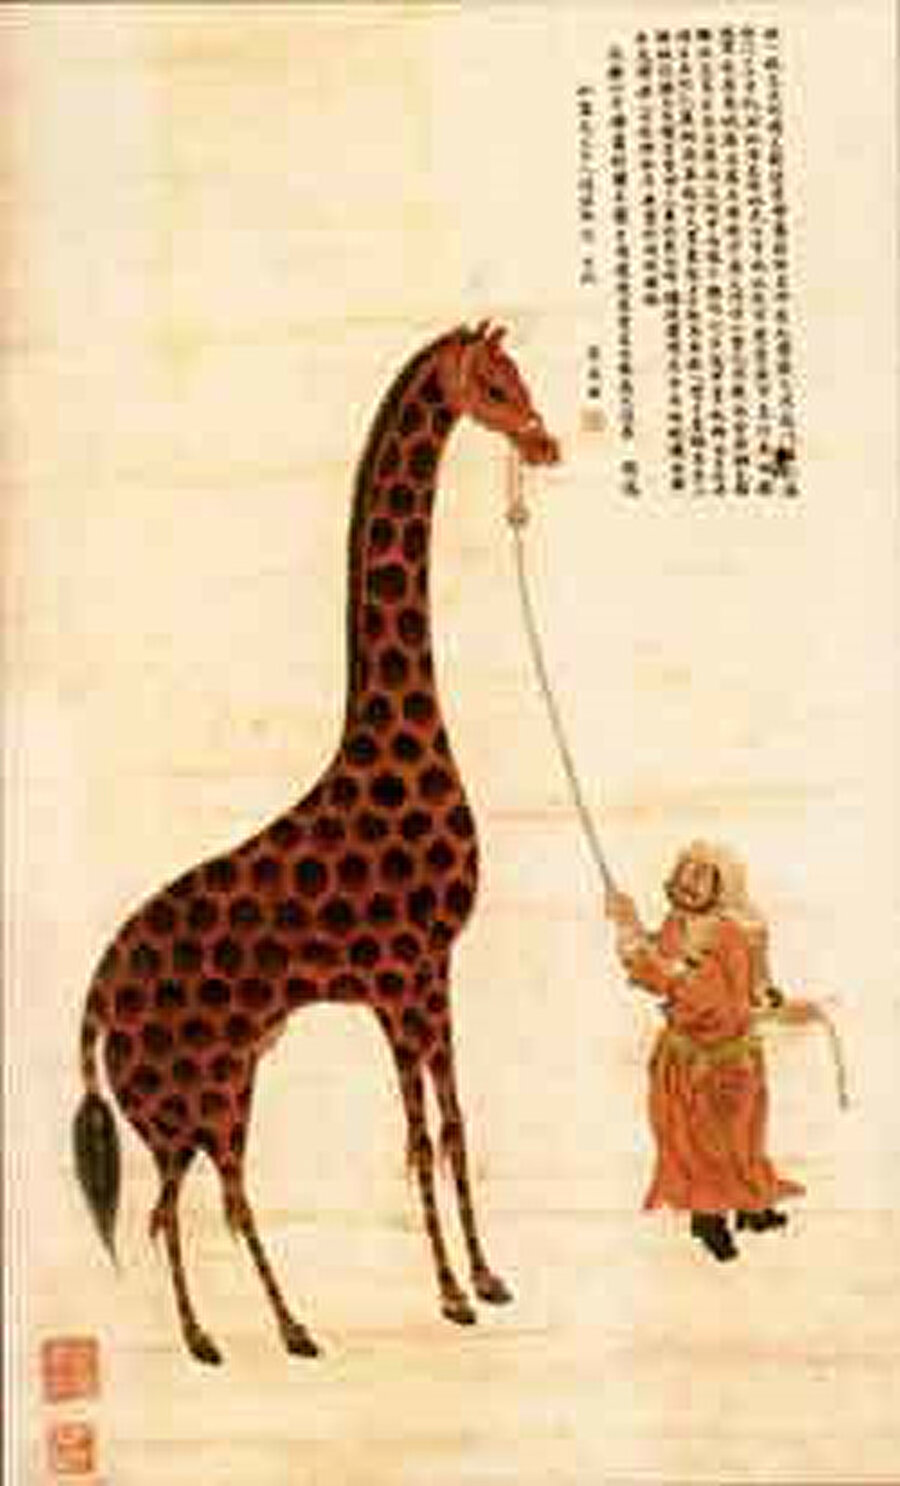 Zheng He, yedinci seferinde mekke’yi ziyareti sonrası yanında zürafalar, aslanlar, deve kuşları gibi sıra dışı pek çok şeyle dönmüştü.